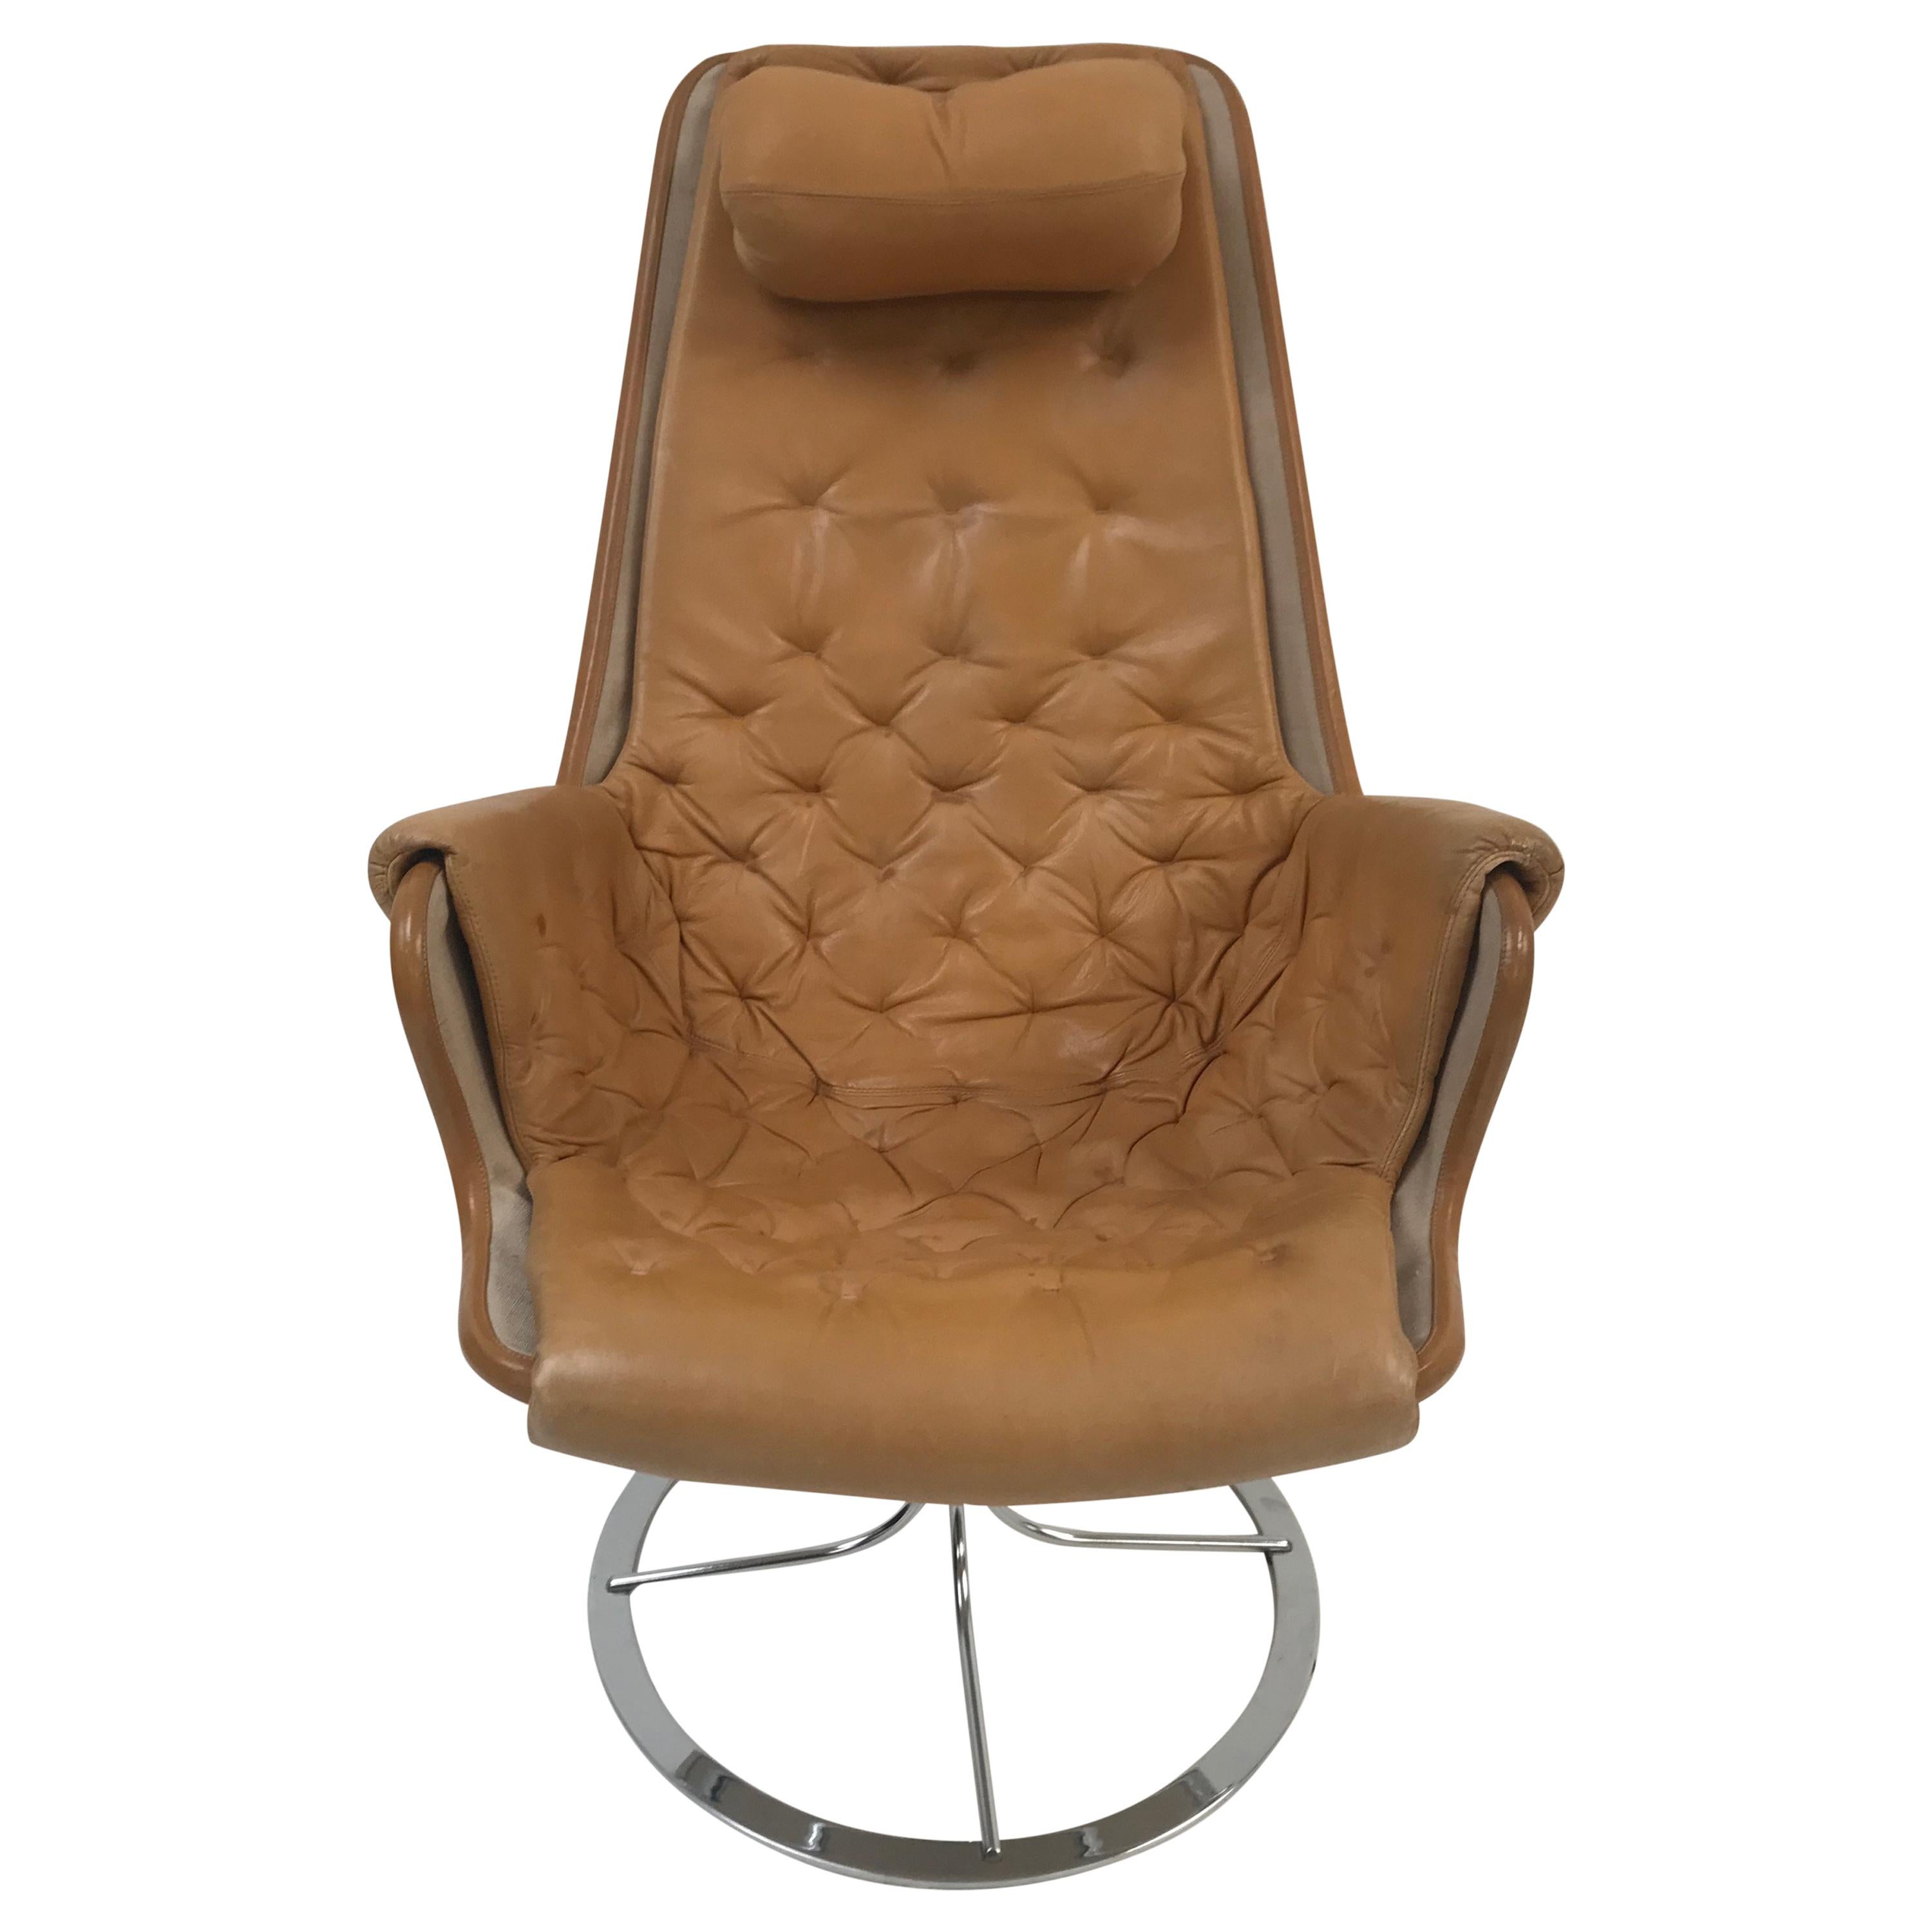 Jetson Chair by Bruno Matthson, 1969